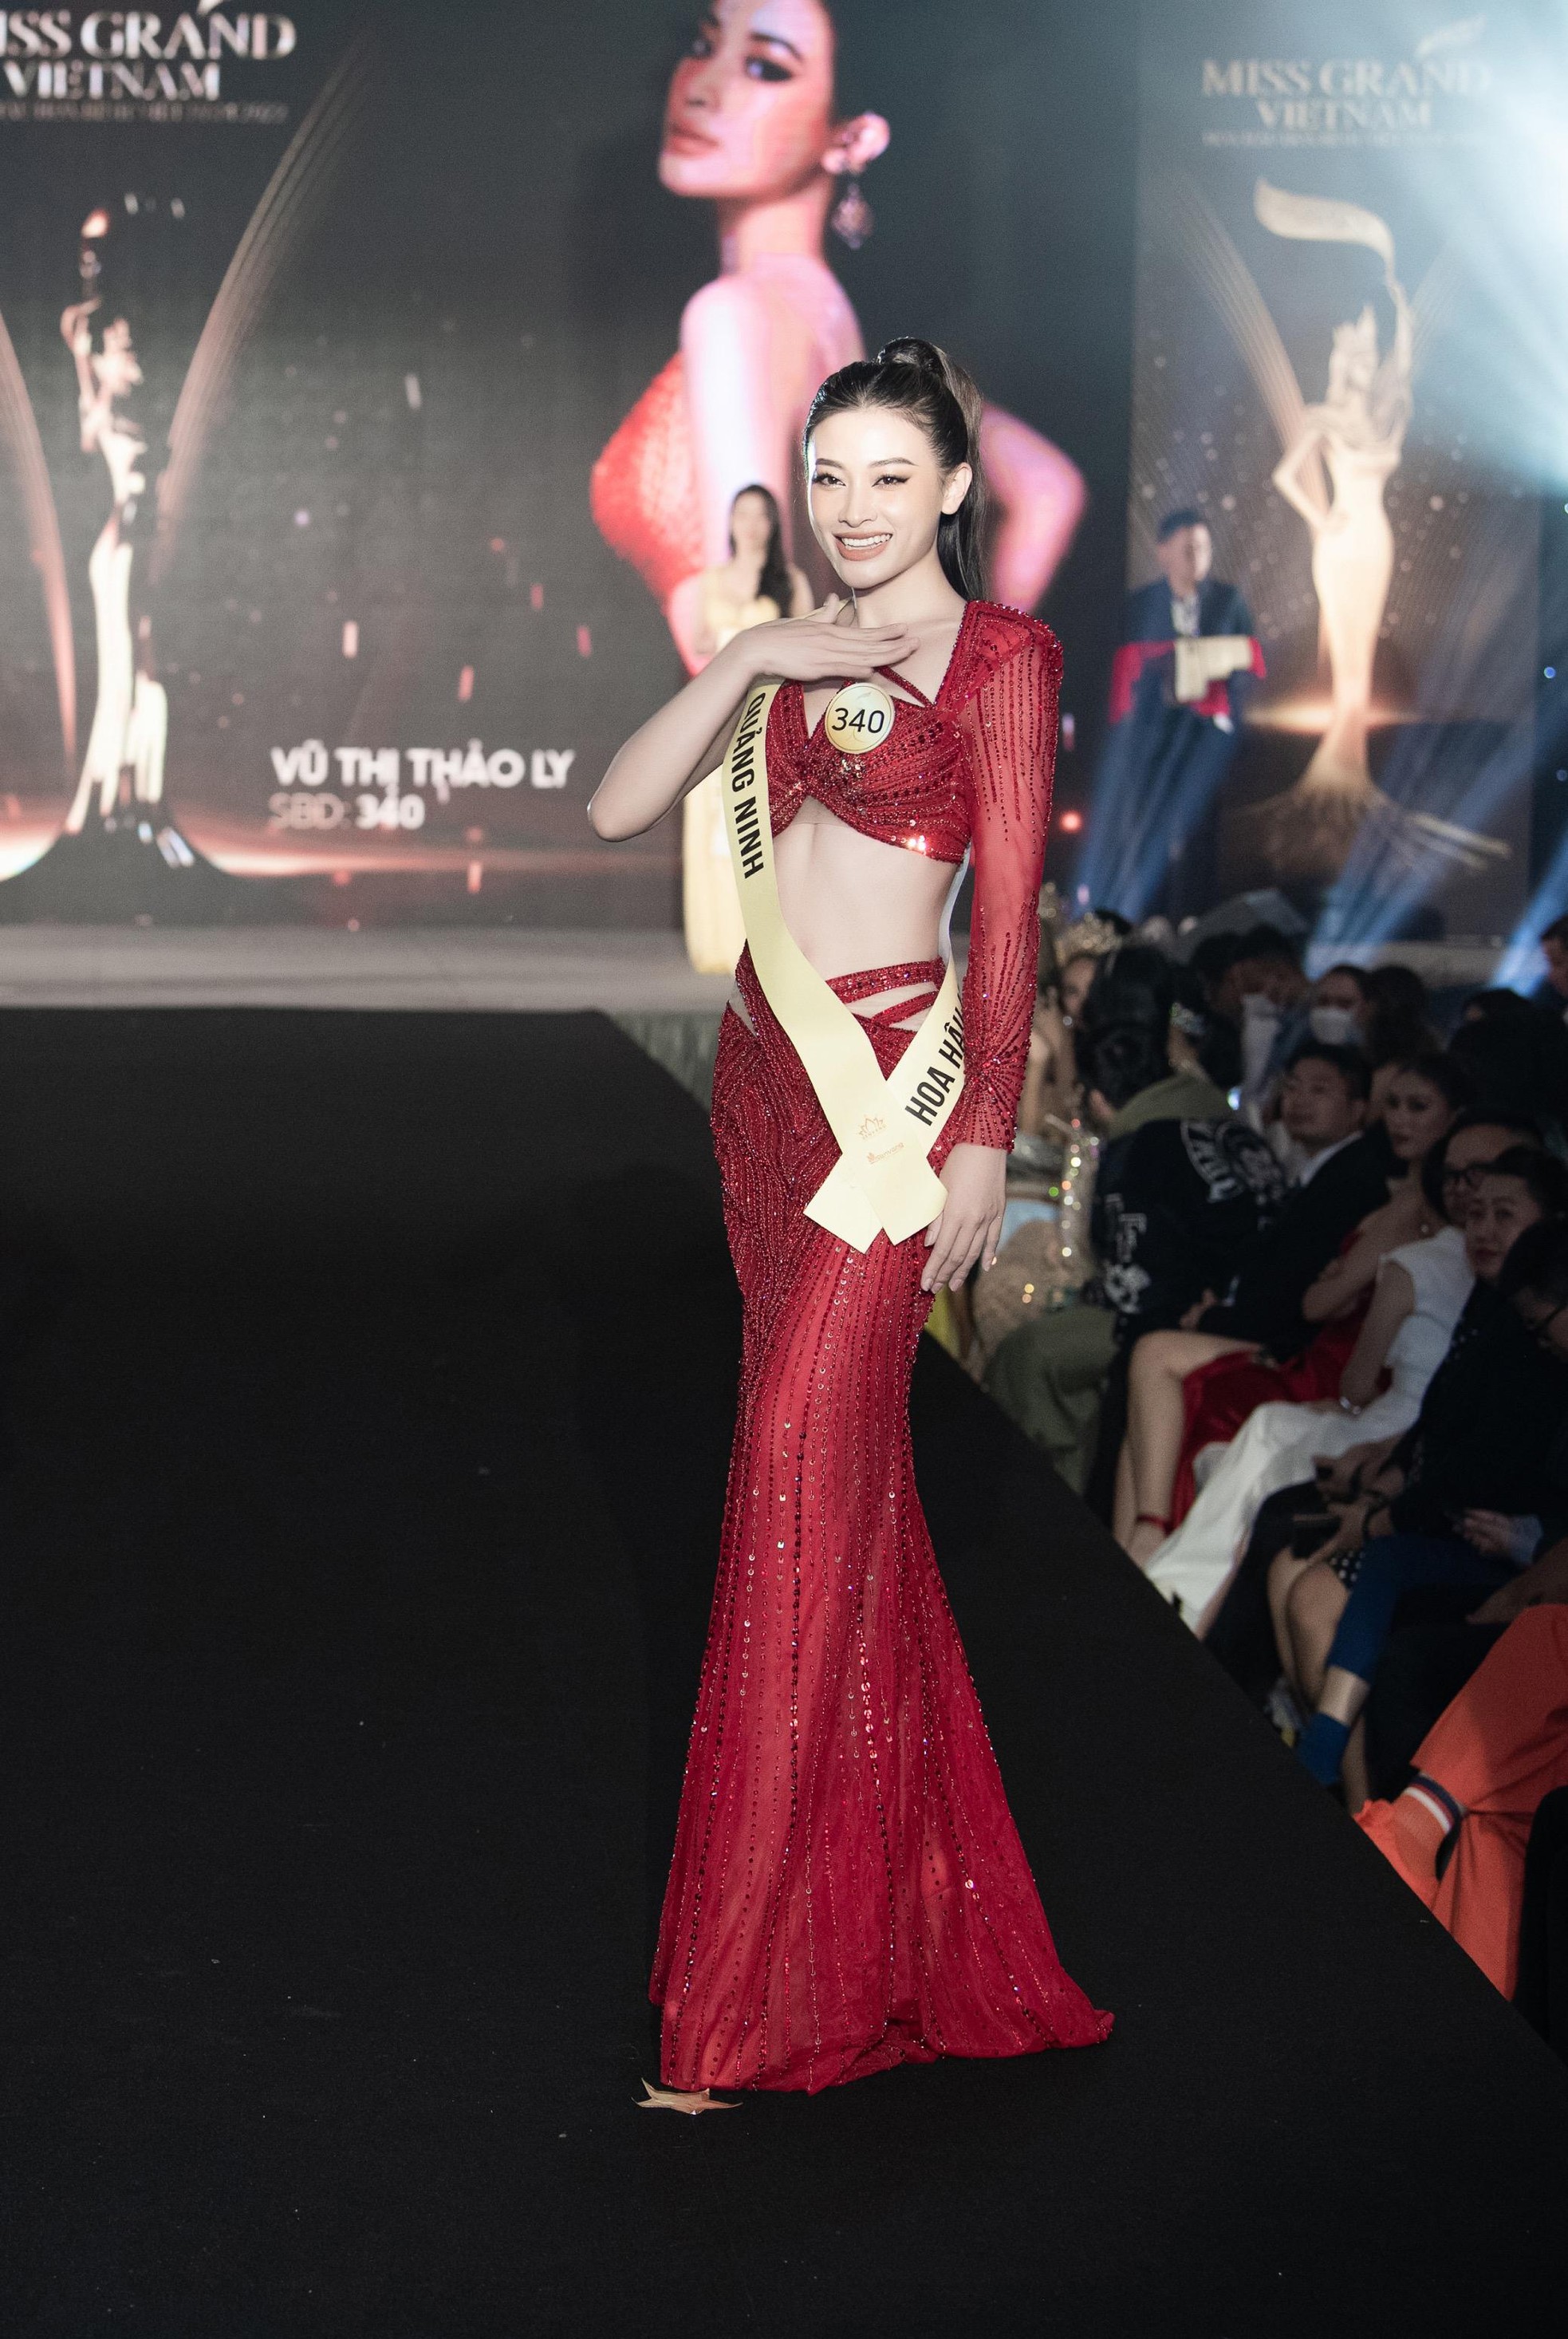 Mai Ngô, Quỳnh Châu tung chiêu catwalk độc đáo tại lễ nhận sash của Miss Grand Vietnam 2022-5